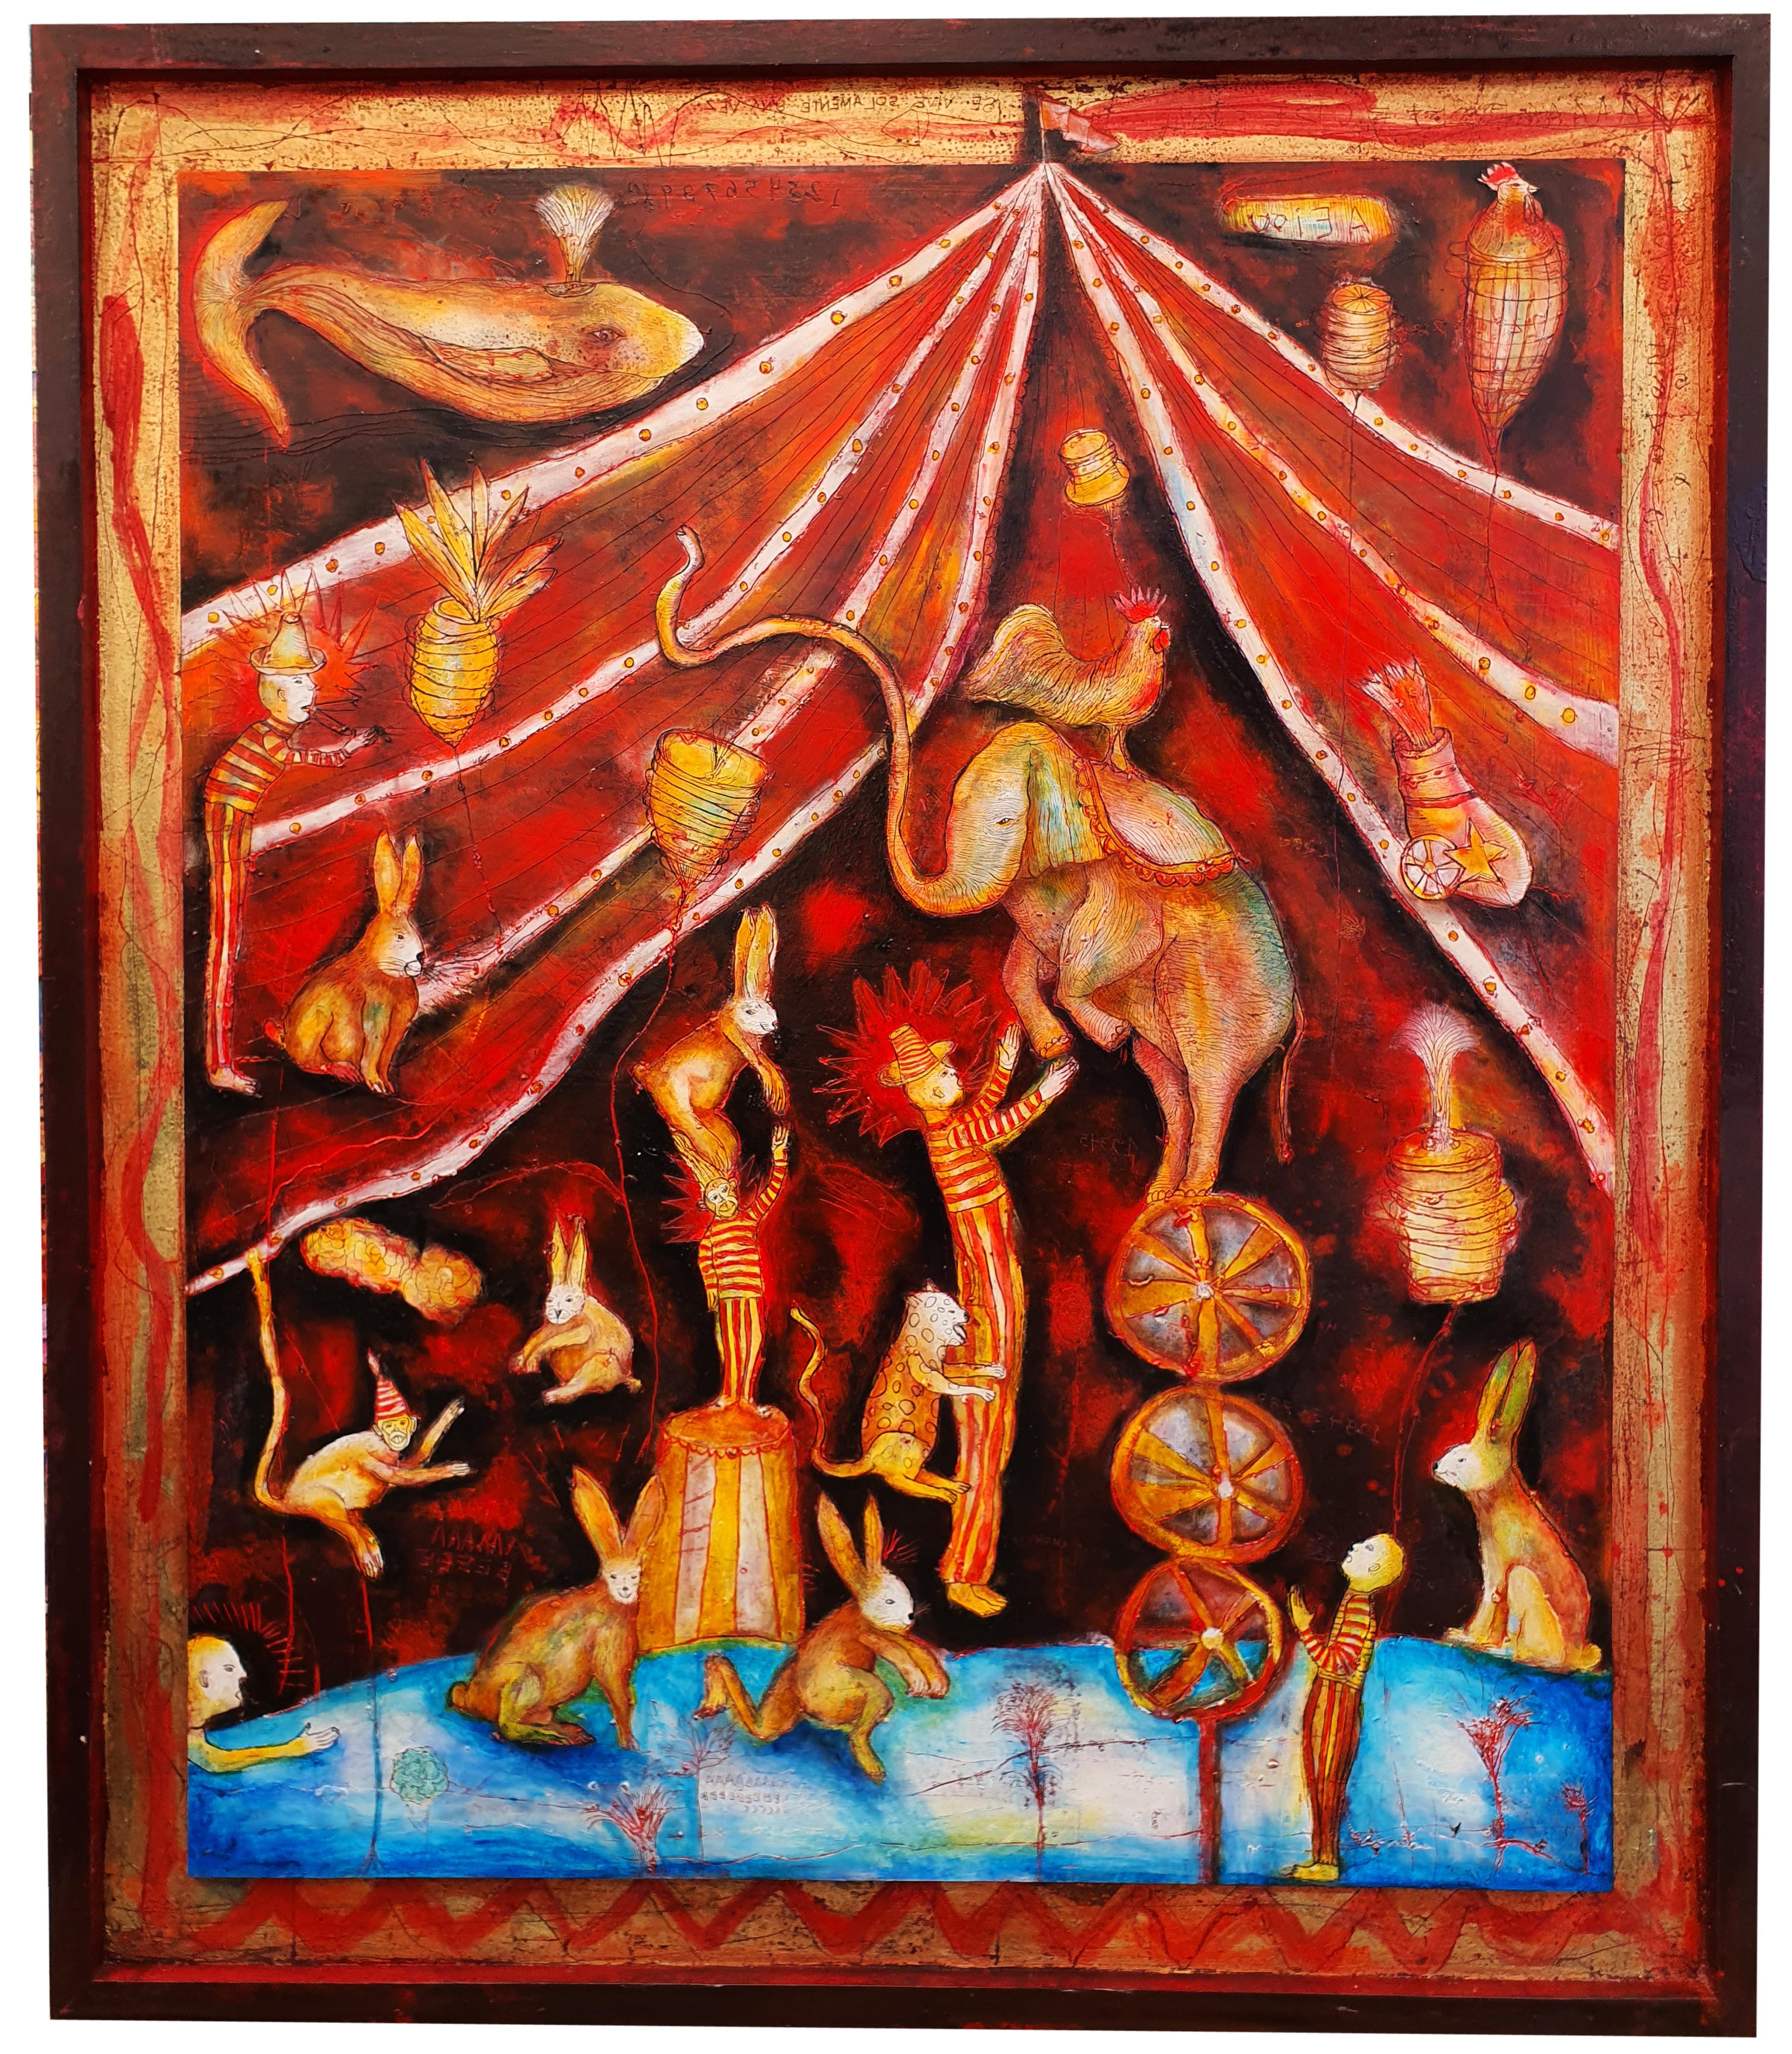 CIRCO ROJO, oil painted encaustic on wood, 140 cm x 120 cm